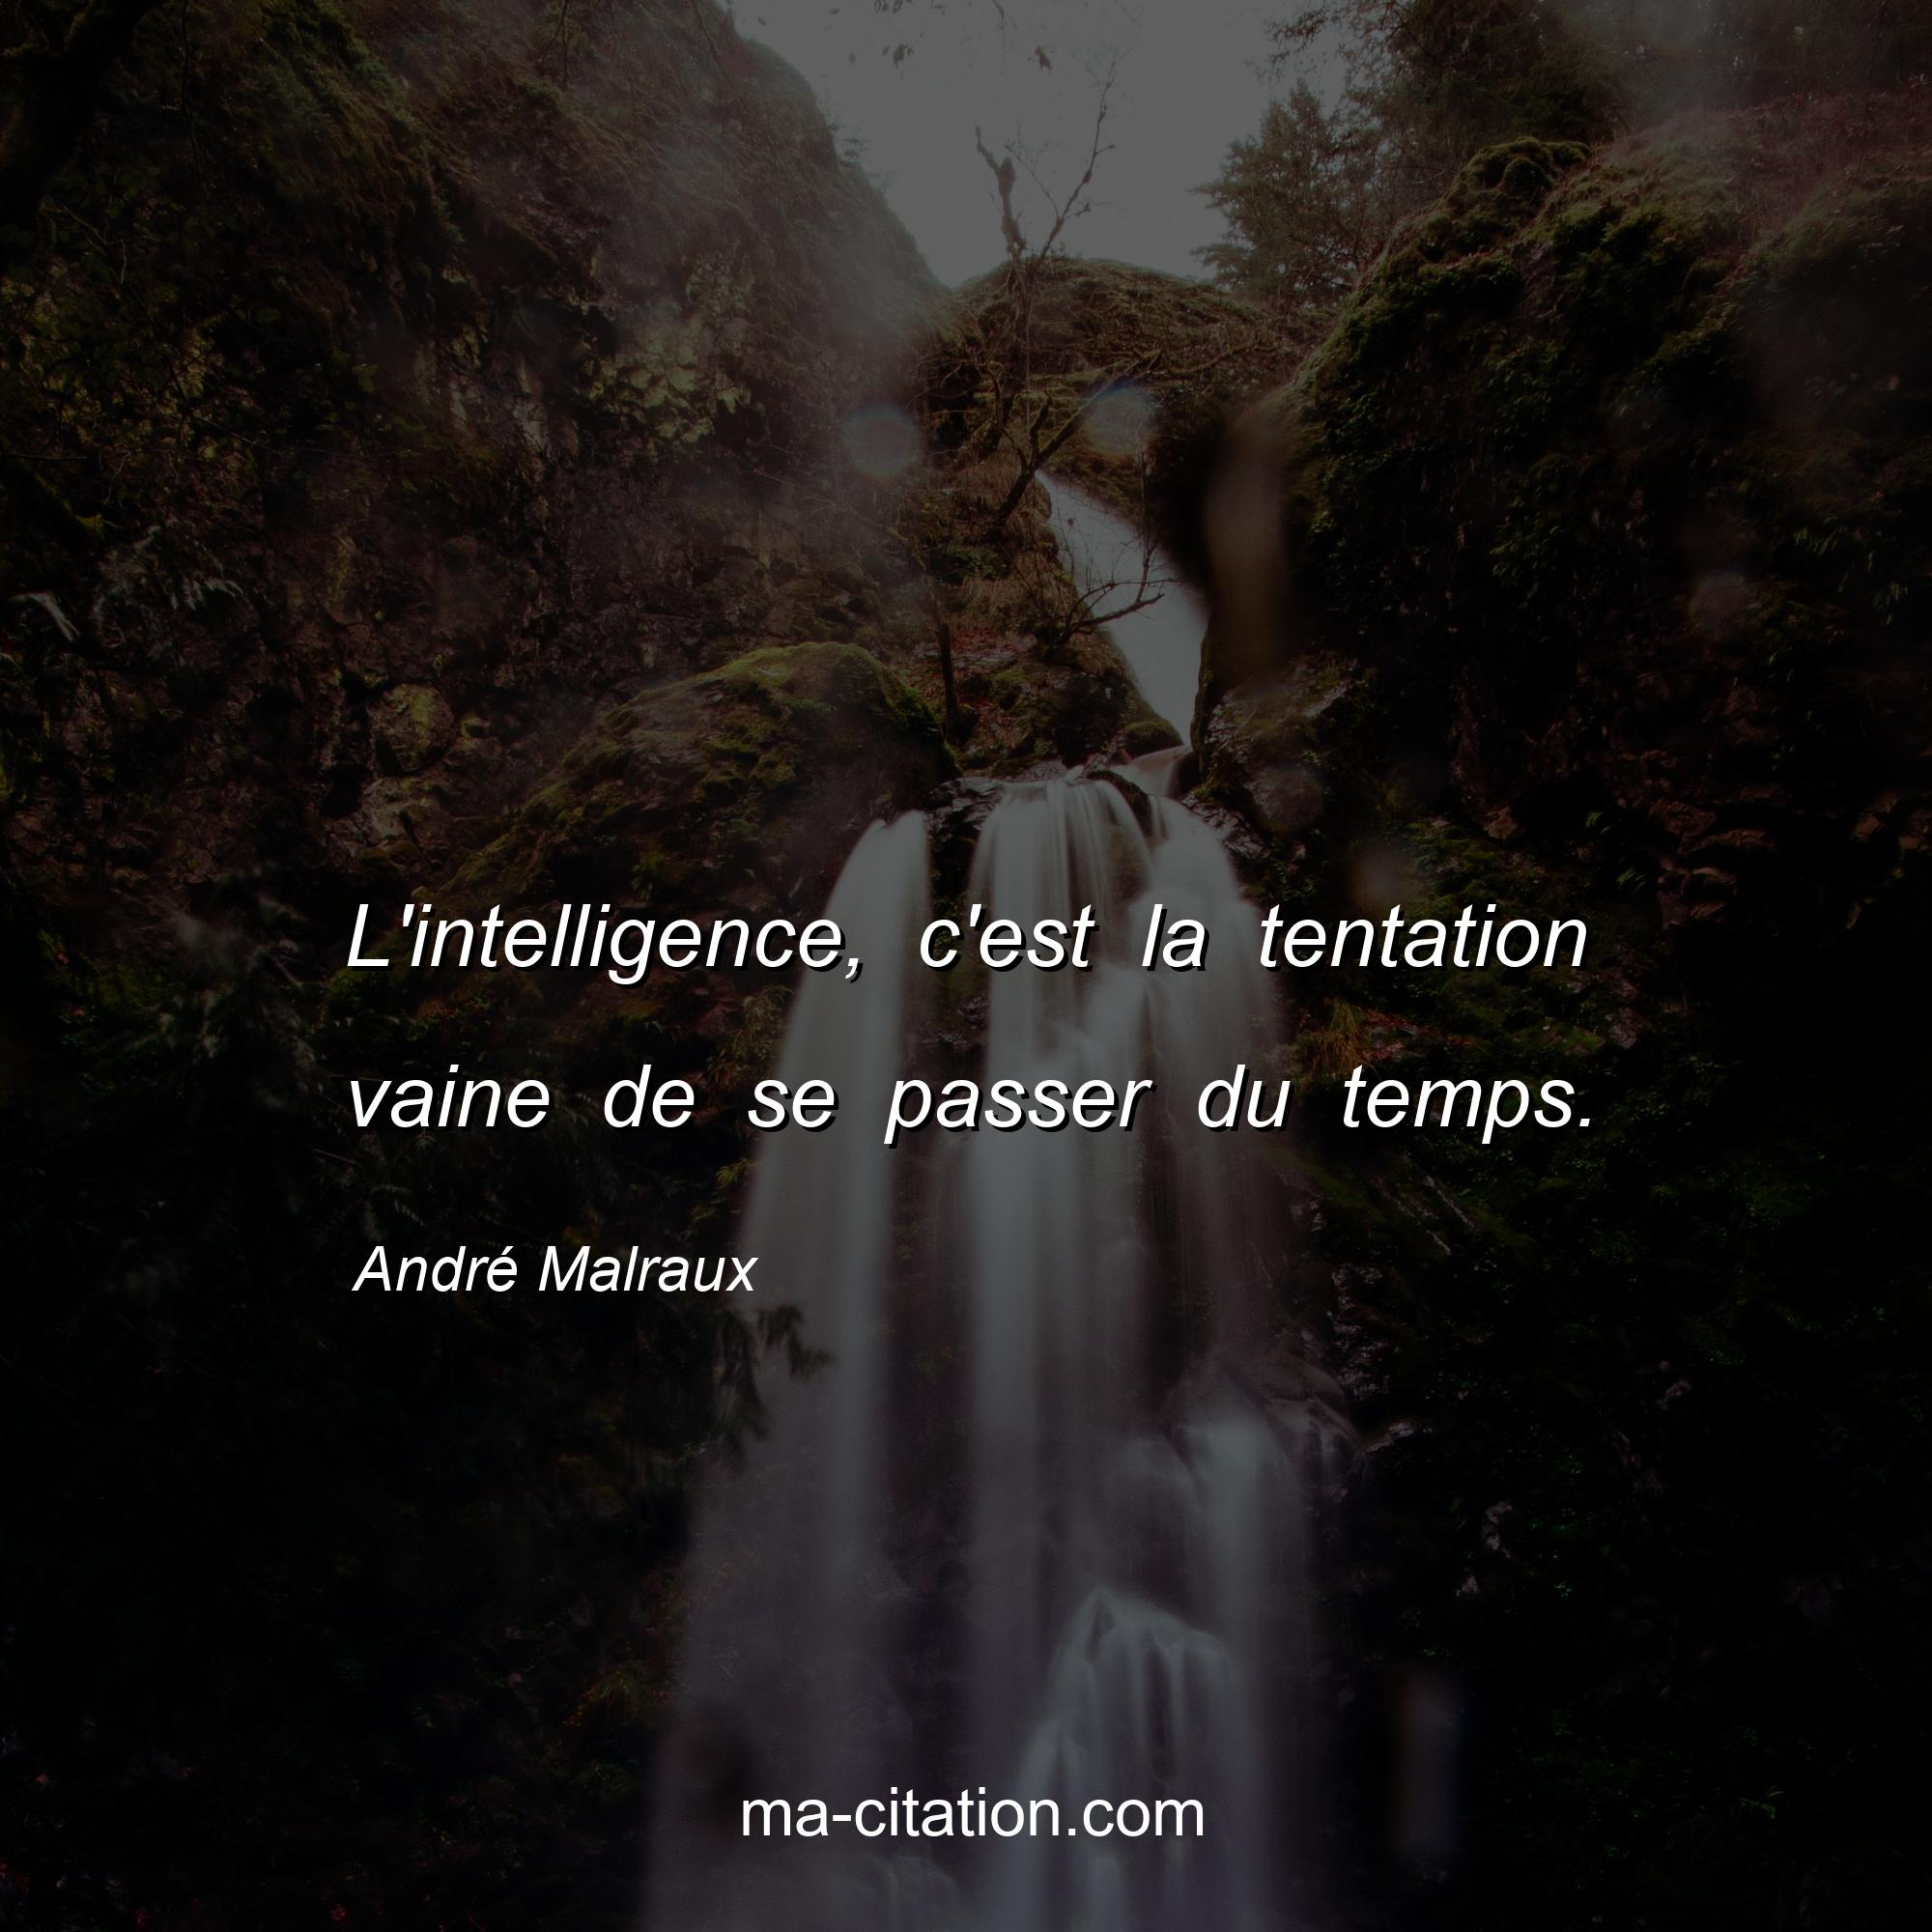 André Malraux : L'intelligence, c'est la tentation vaine de se passer du temps.